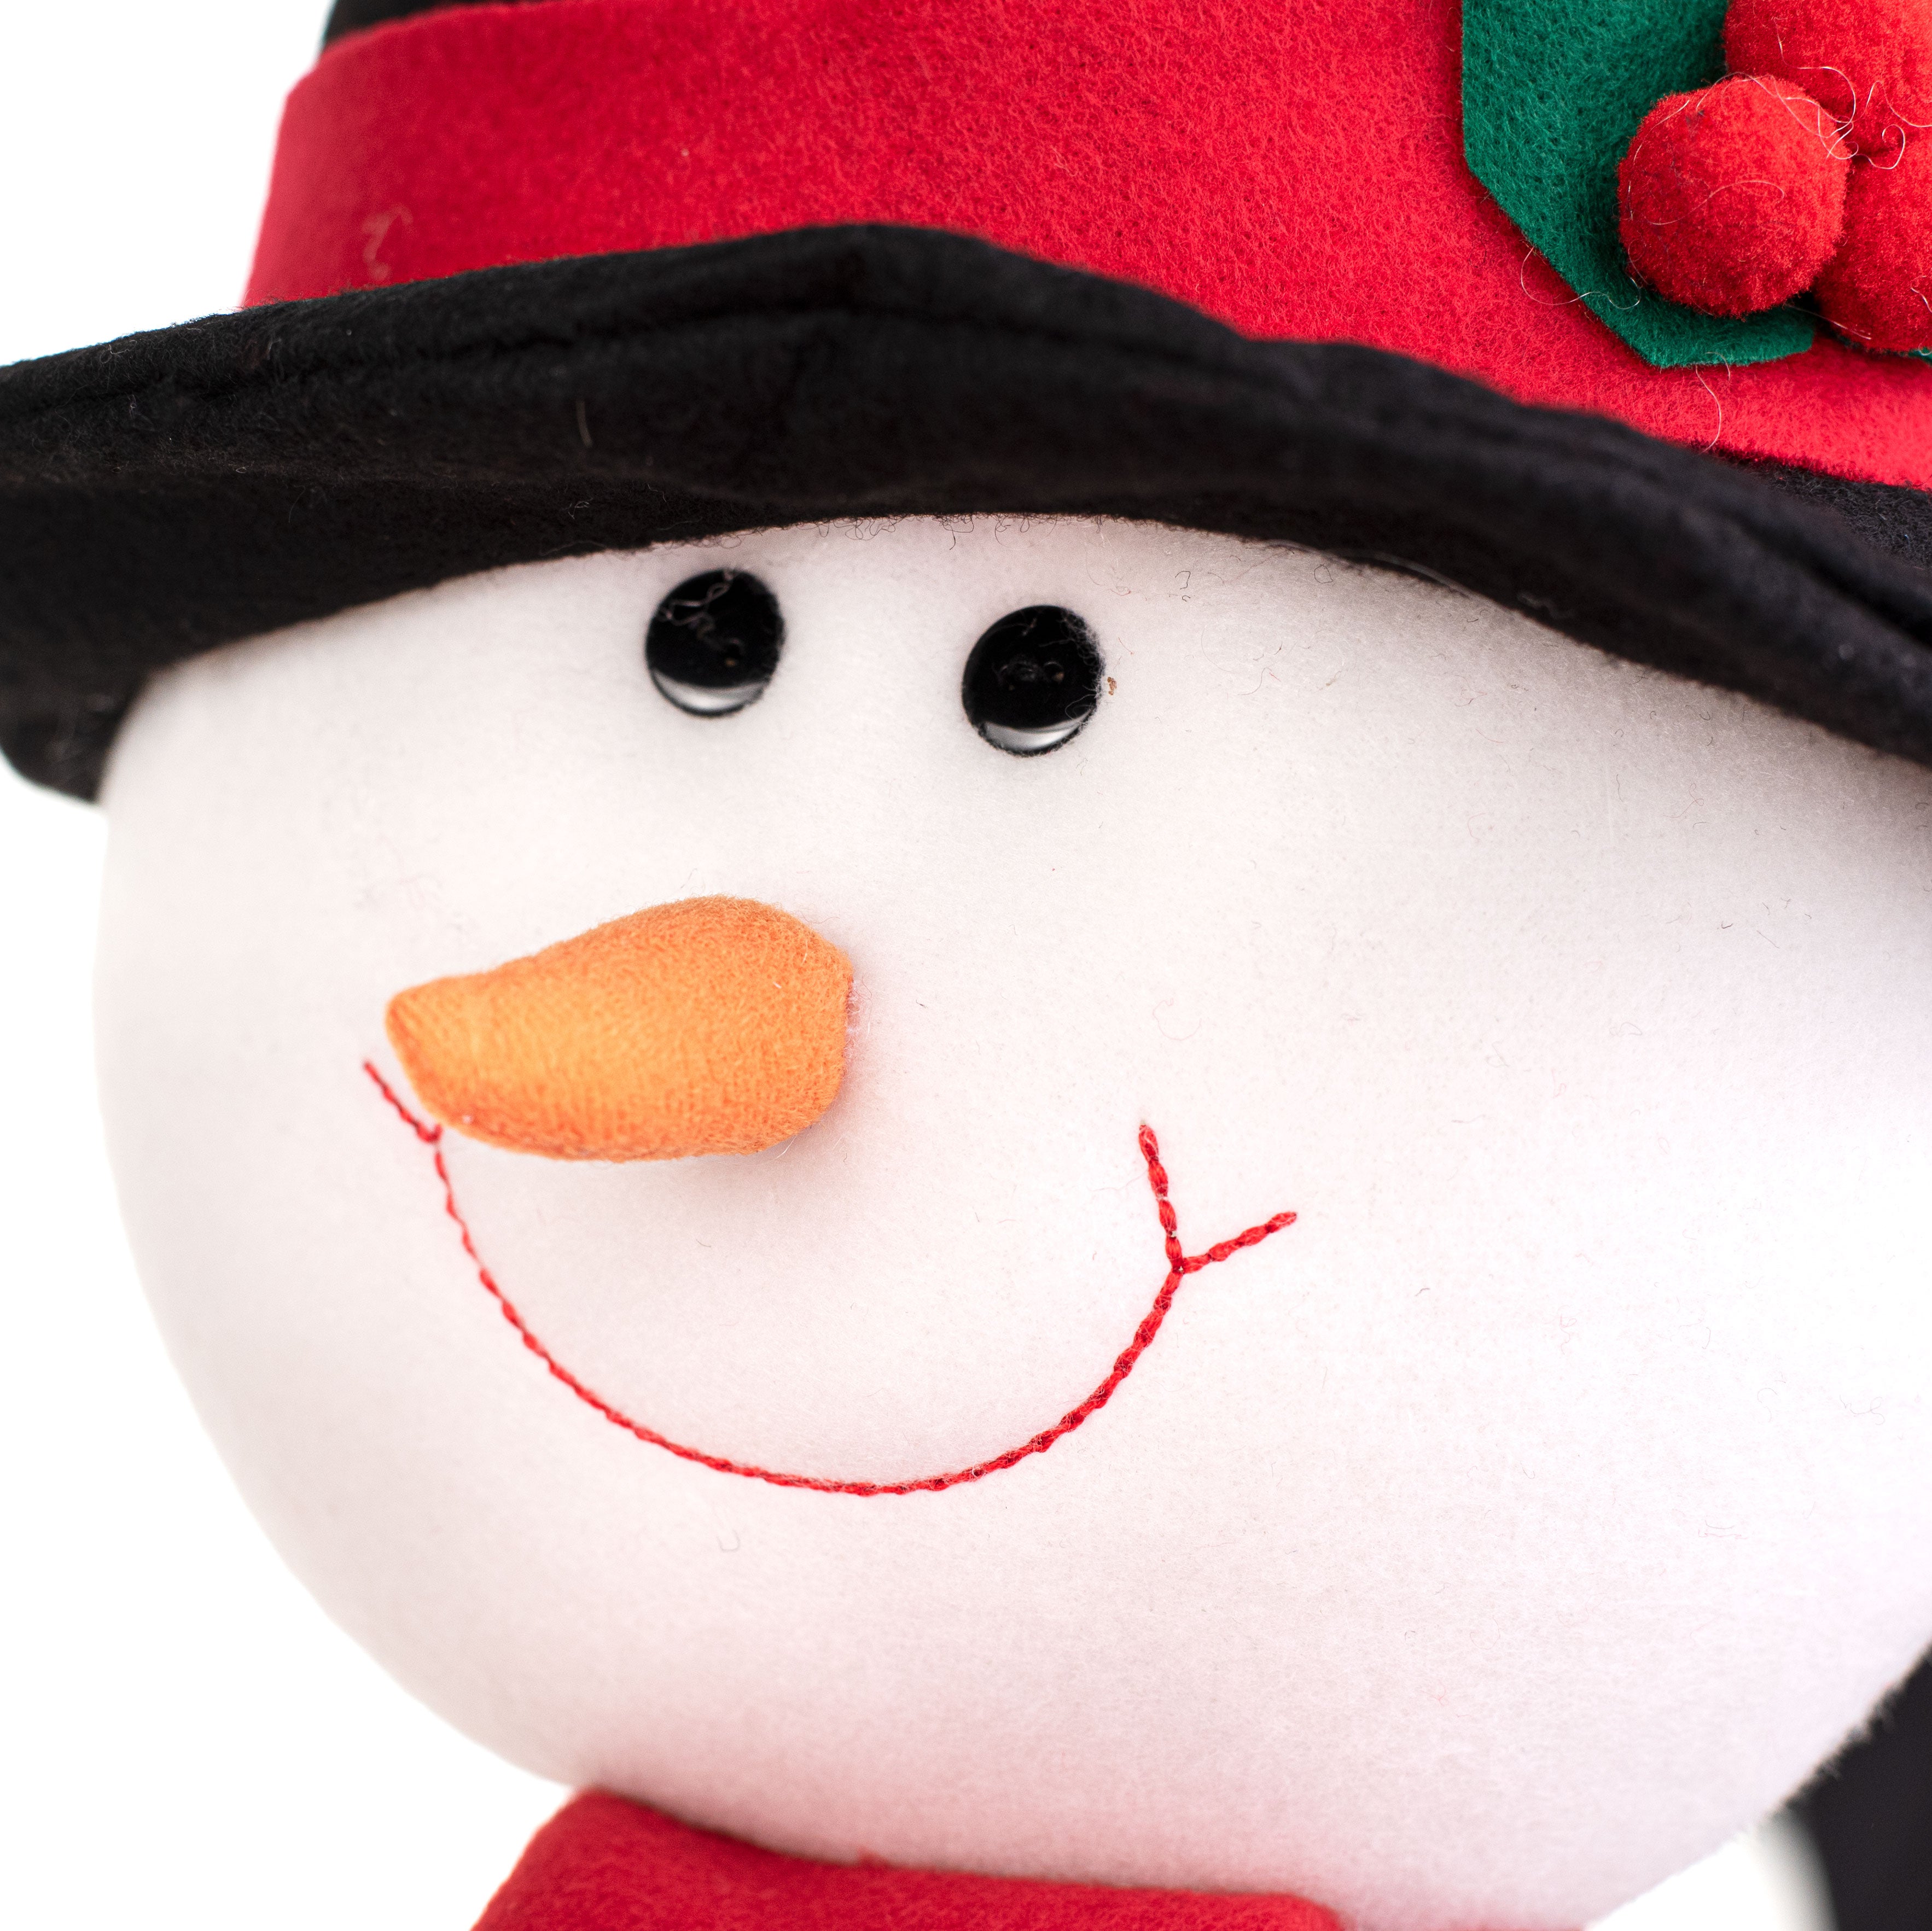 21" Fabric Snowman Head Pick: Black & Red